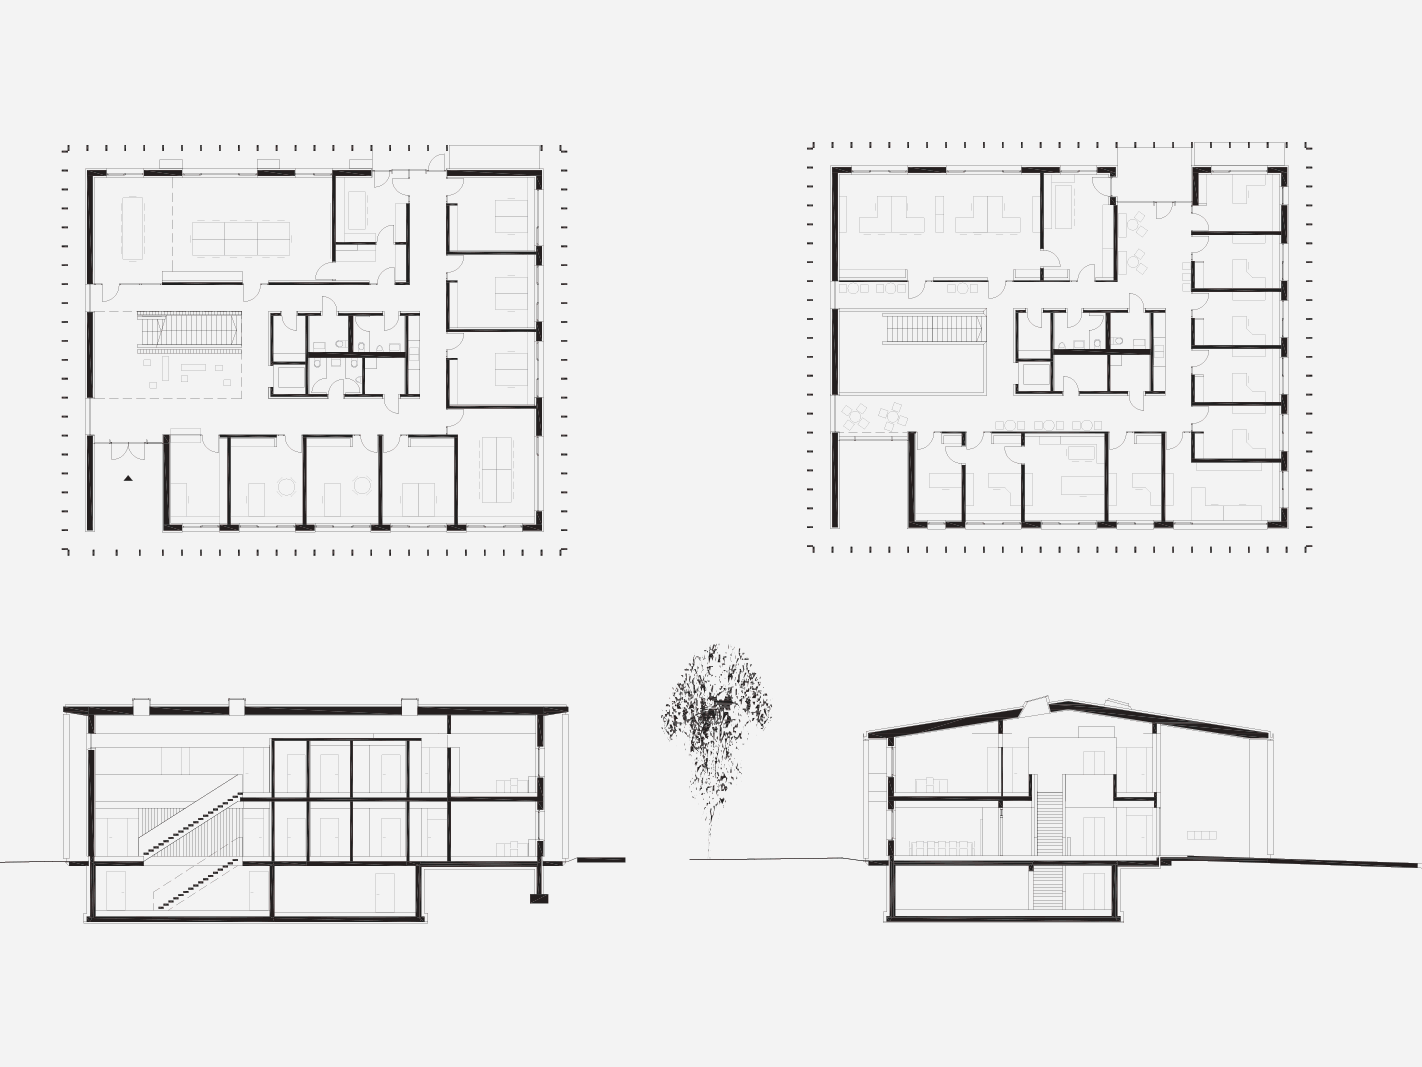 Auf dem Bild sind 4 Skizzen des Argikulturzentrums zu sehen. Es werden verschiedene Ansichten gezeigt, sowie die innere Struktur des Gebäudes.